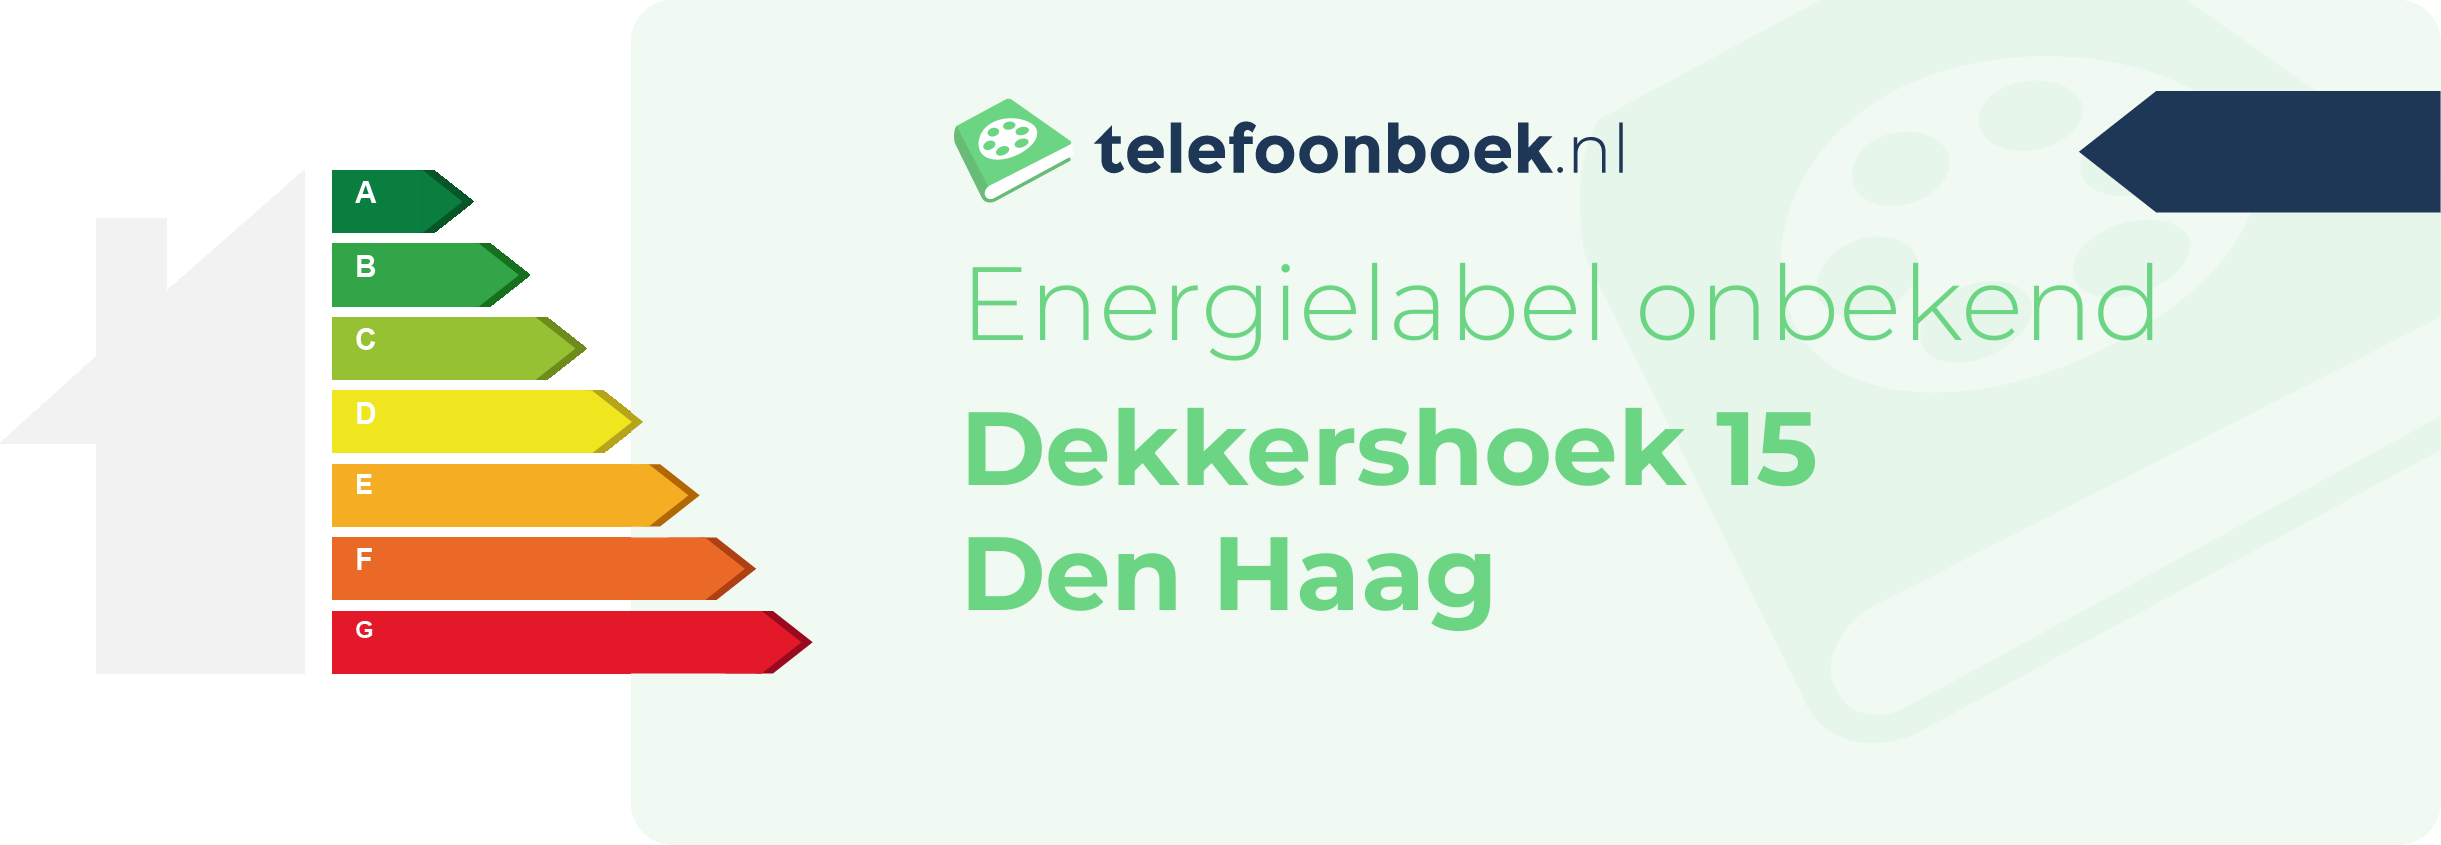 Energielabel Dekkershoek 15 Den Haag